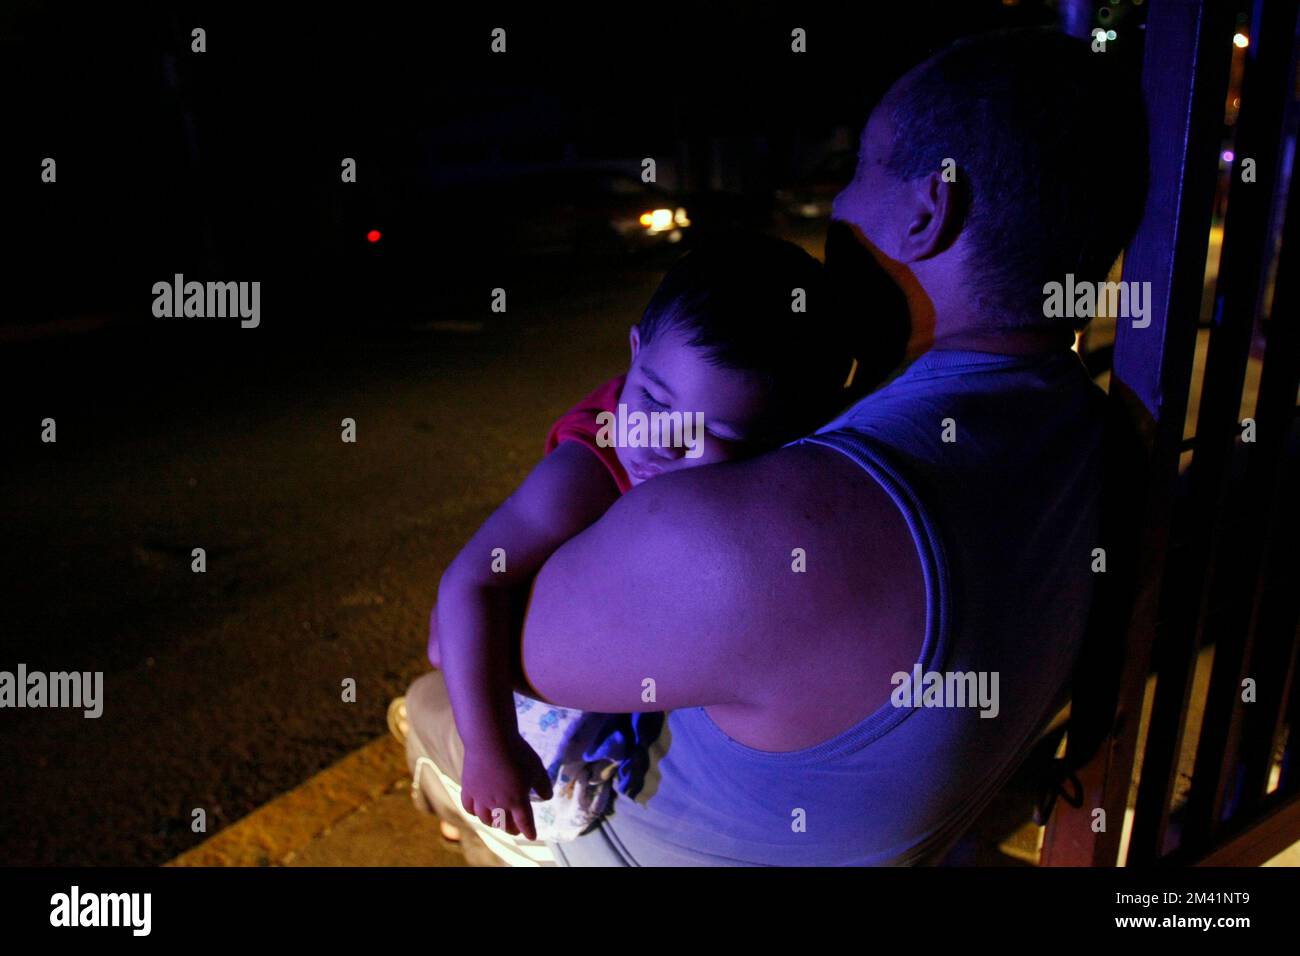 Non exclusif: Maracaibo-Venezuela-23-03-2010- Antulio Romero porte son fils endormi dans ses bras devant sa maison en attendant le retour d'ele Banque D'Images